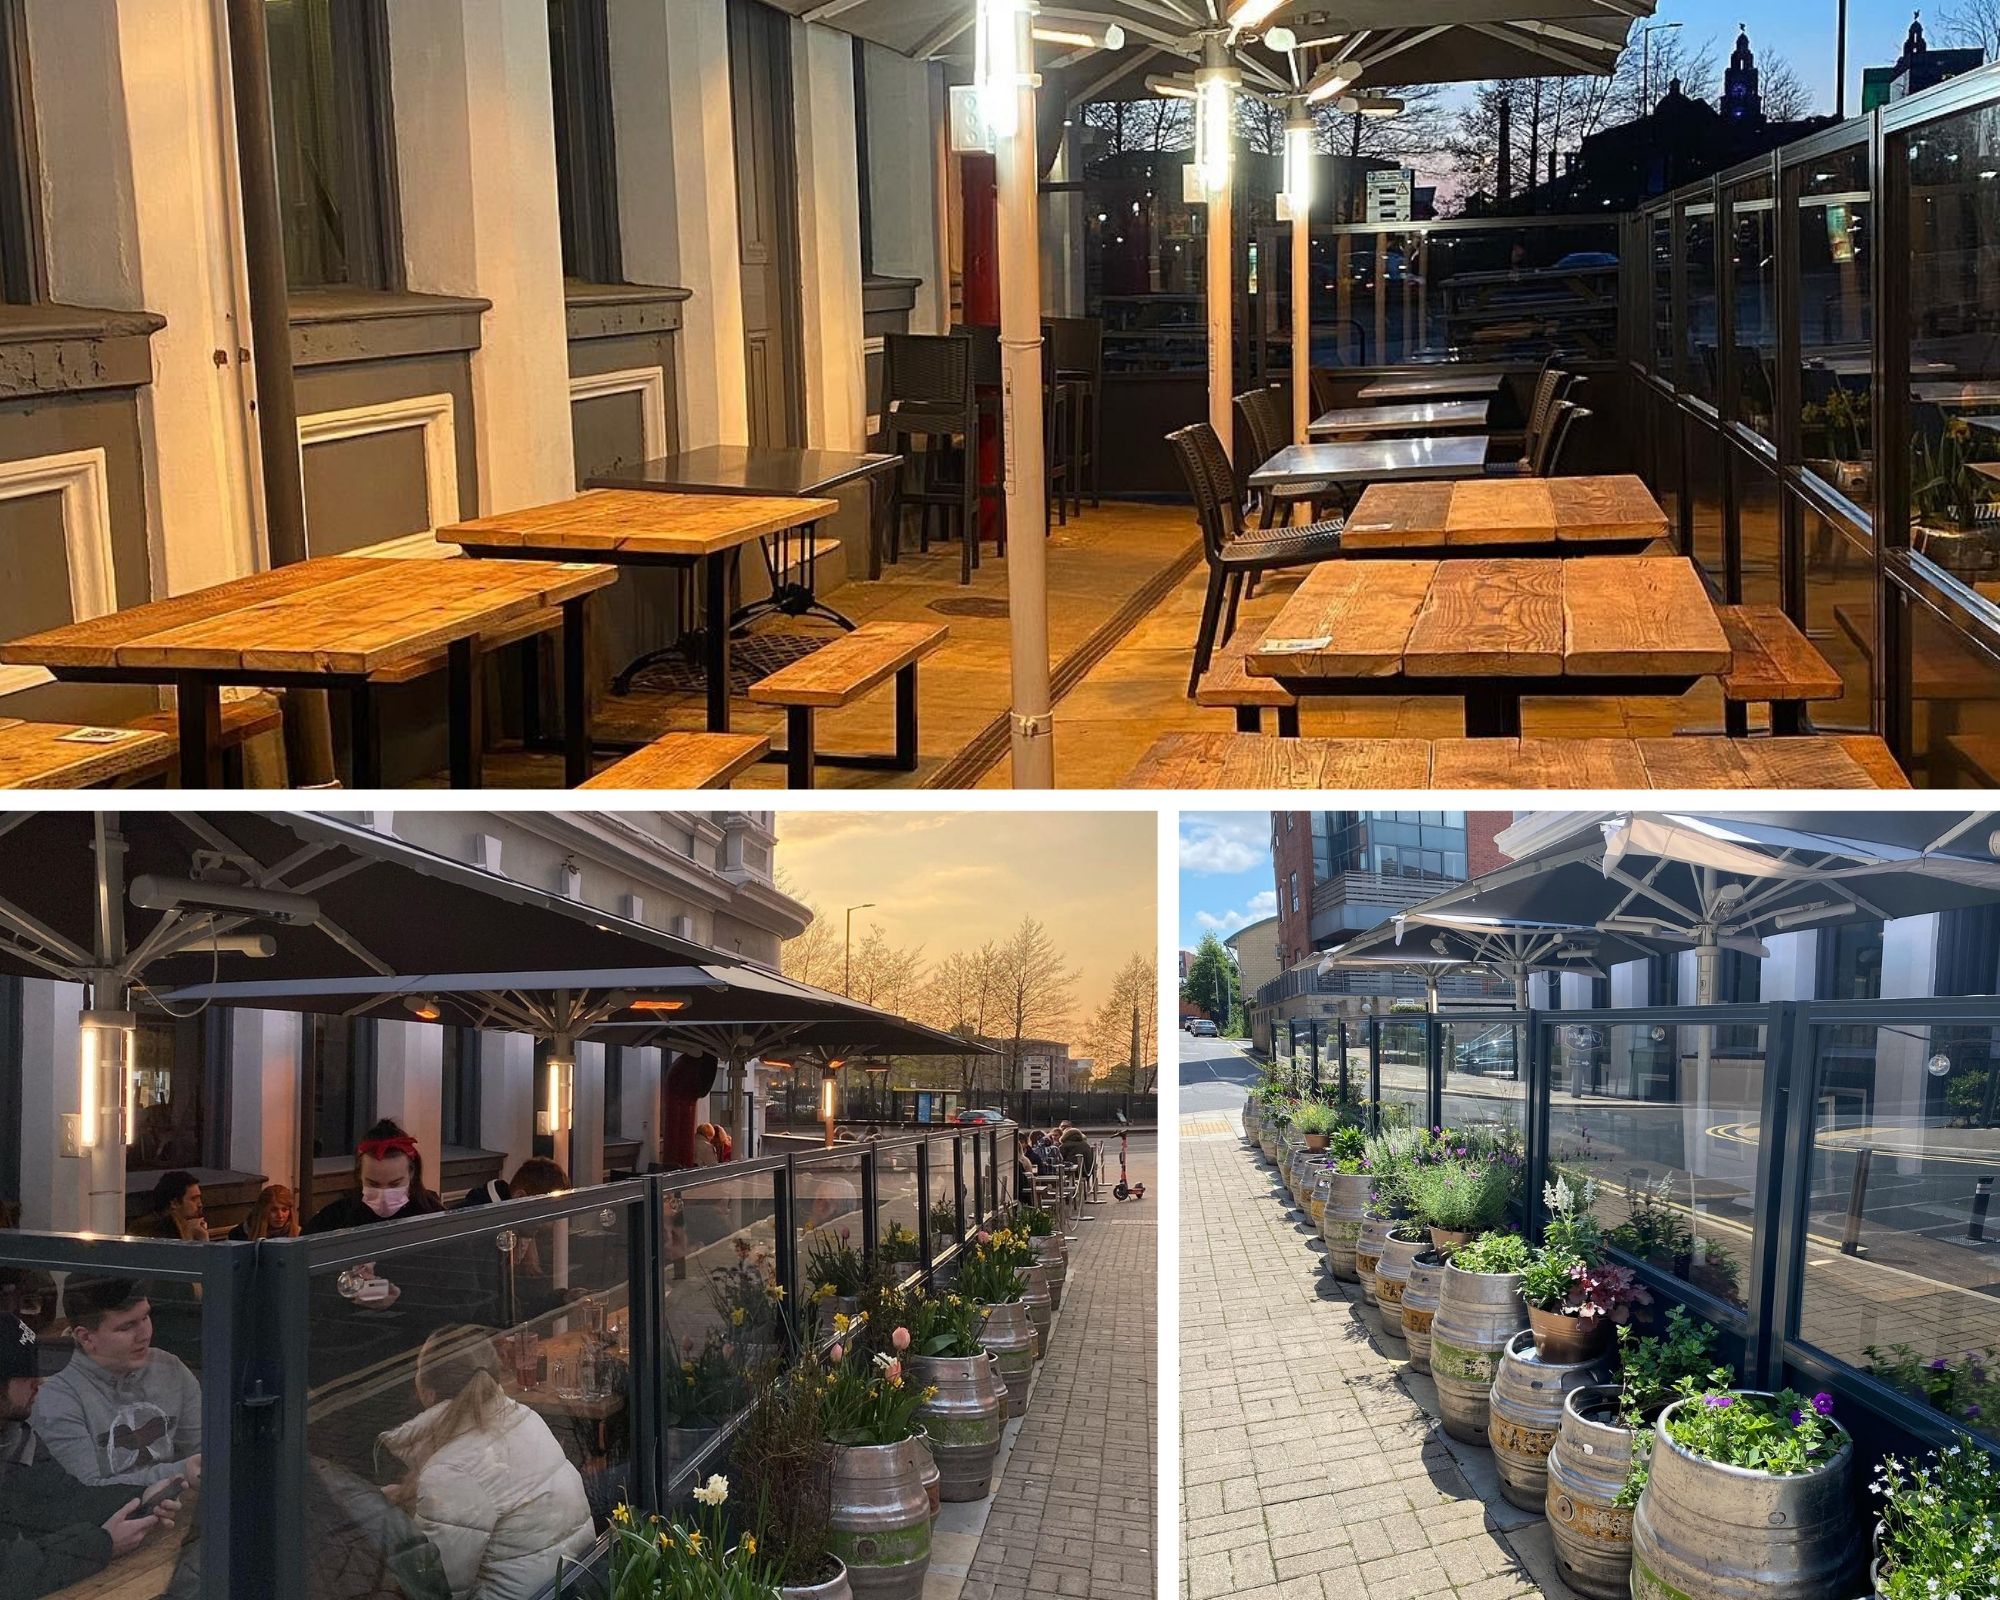 Terrace Screens, Parasols and Outdoor Heaters transform Liverpool pub